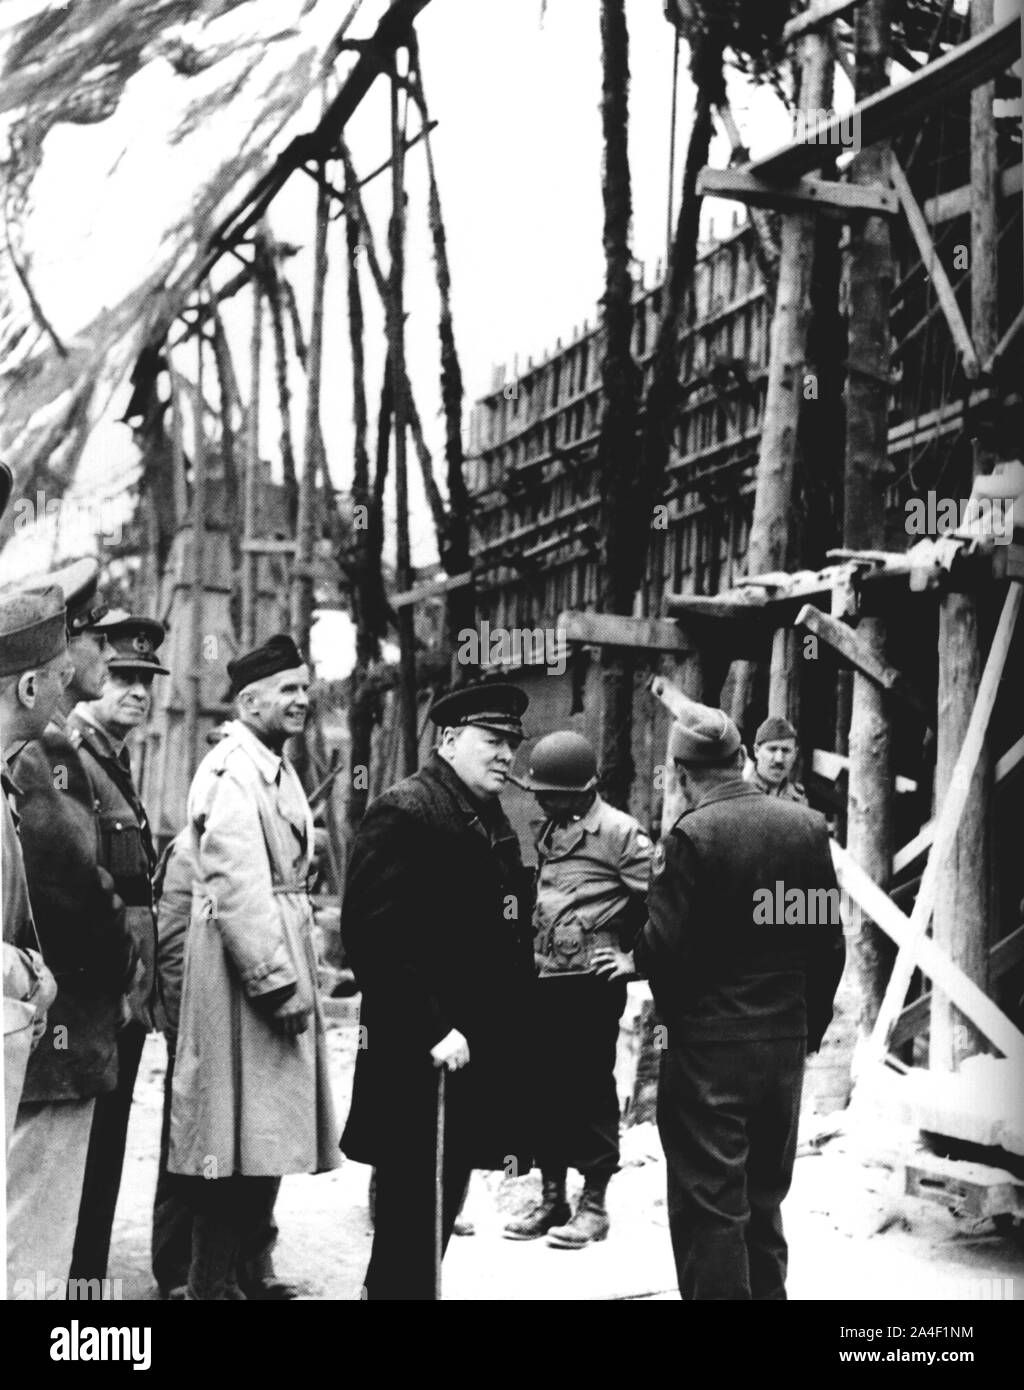 Winston Churchill visite un site de lancement de V1 Rocket près de Cherbourg qui avait été mis hors d'action par les forces américaines. Août 1944 Banque D'Images